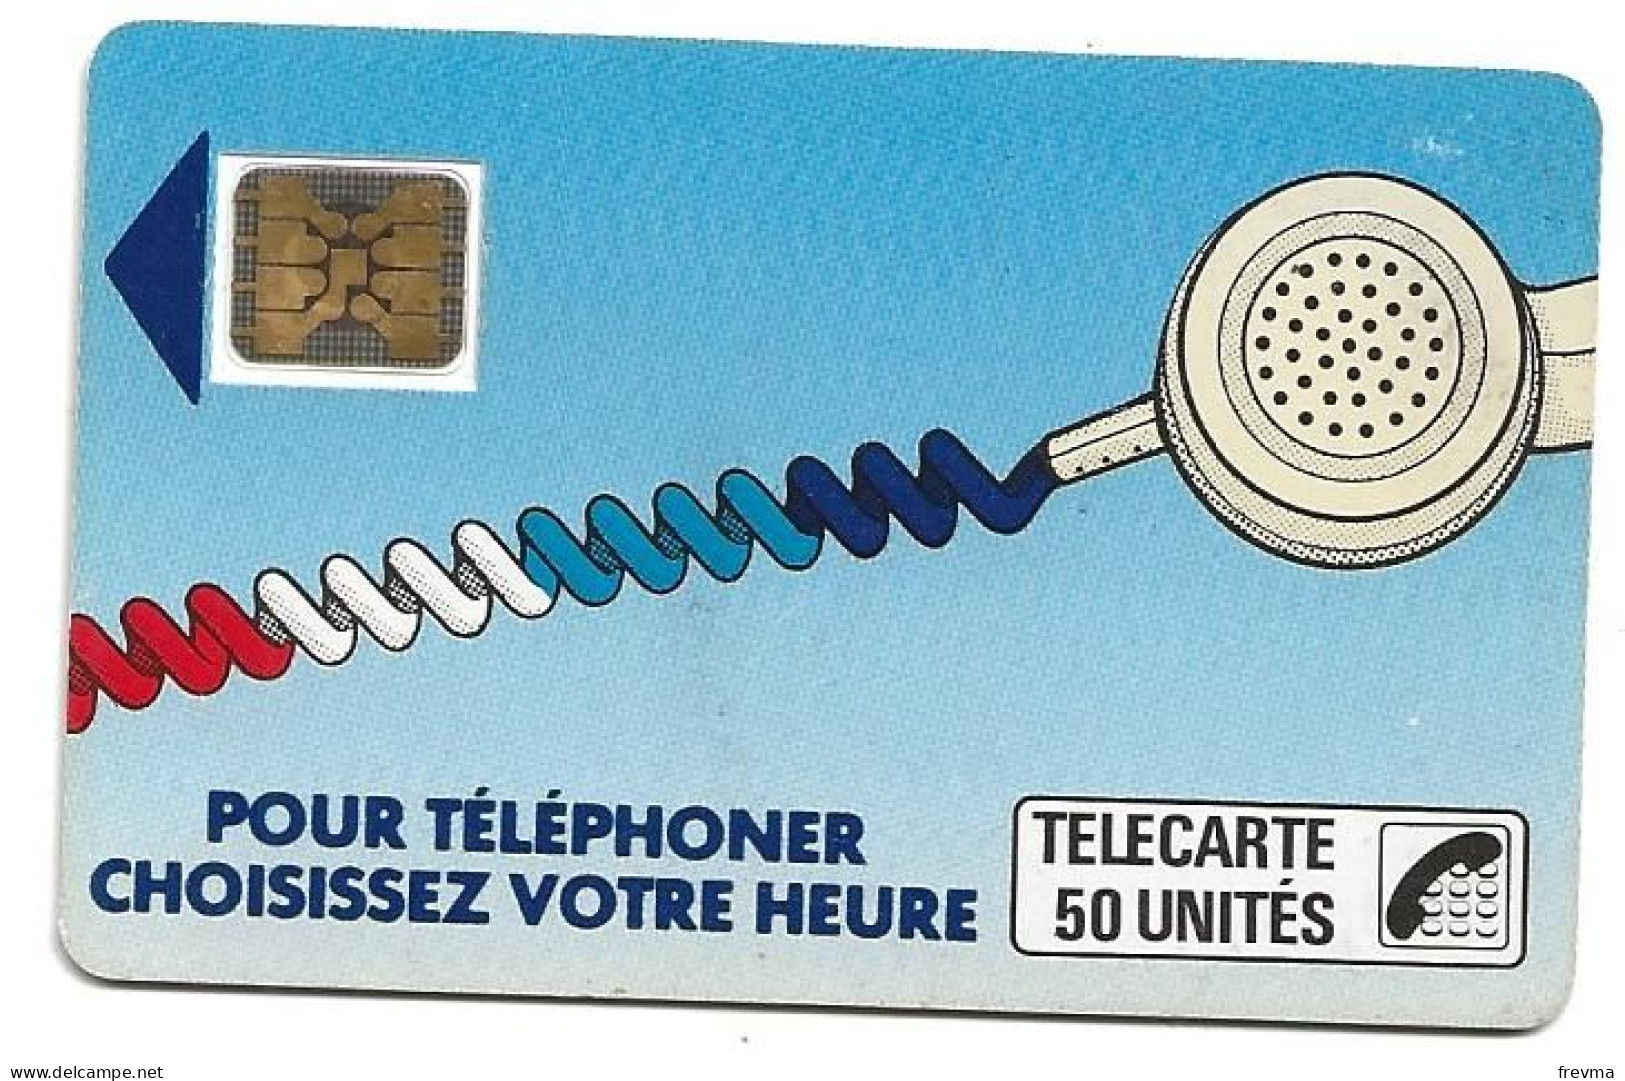 Telecarte K 16 50 Unités SC5on - Telefonschnur (Cordon)